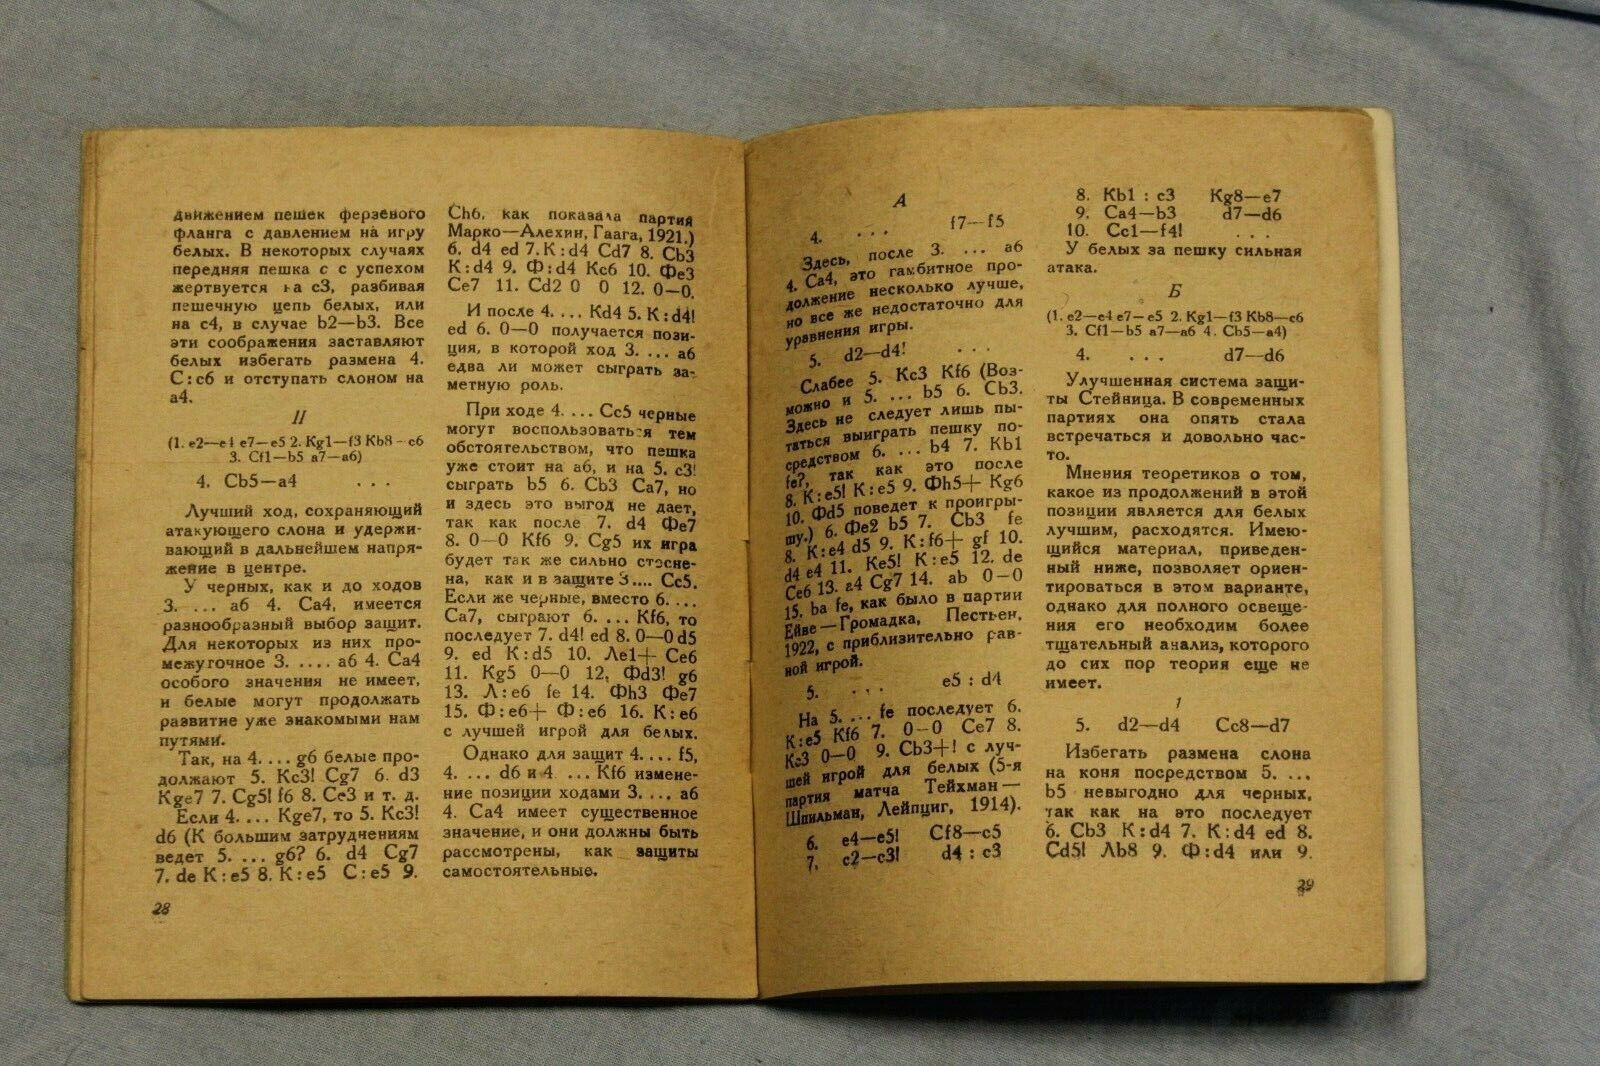 10914.Antique Soviet Chess Book. V. Nenarokov. Spanish Game. 1932